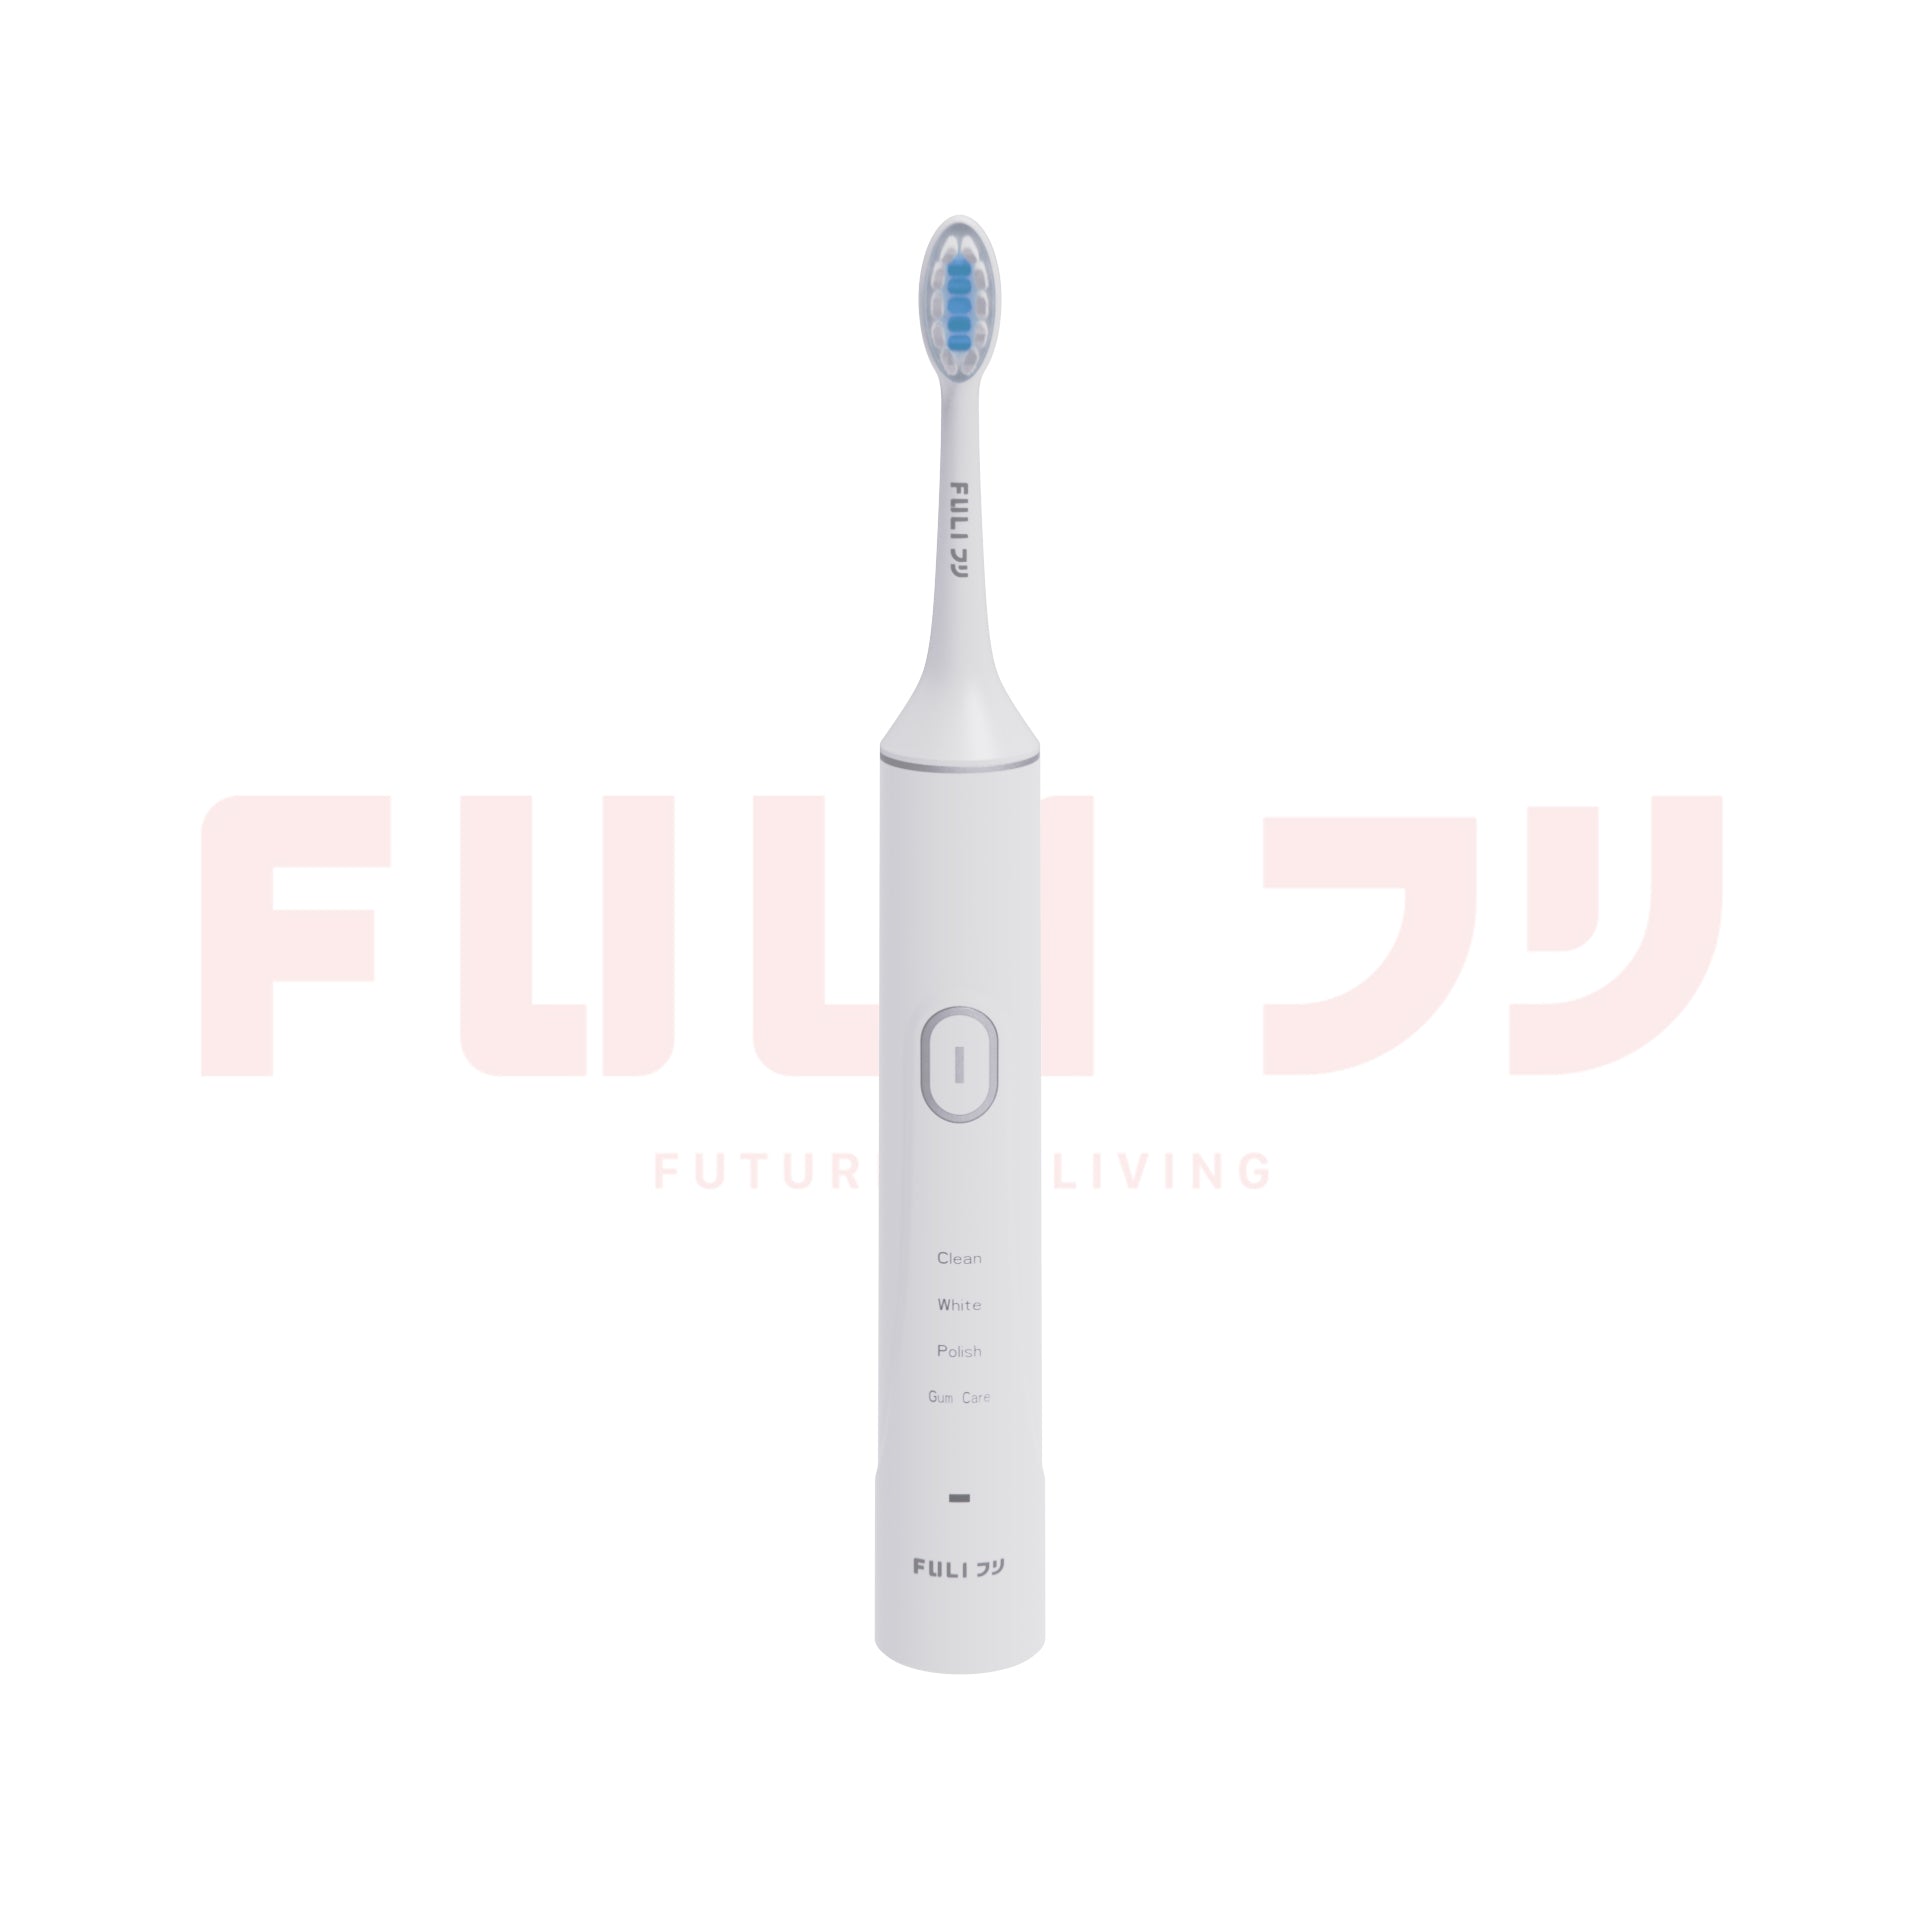 เซตReady to go FULI IONIC Styling Brush + LED Sonic Electric Toothbrush